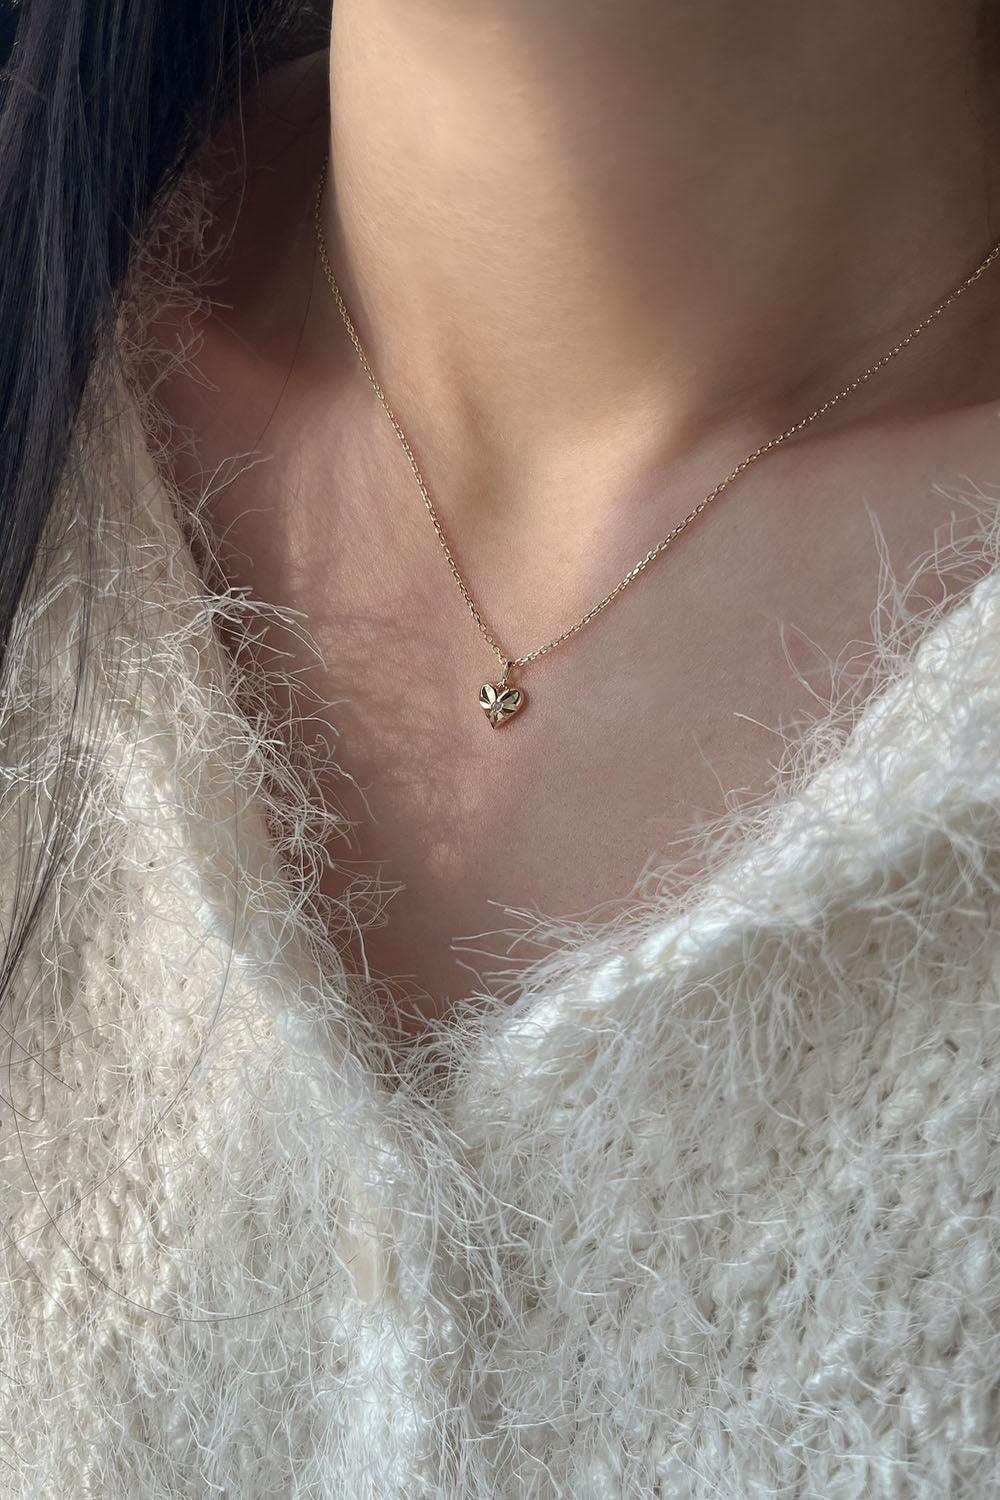 14k shining heart necklace - 4MiLi (フォーミリ)